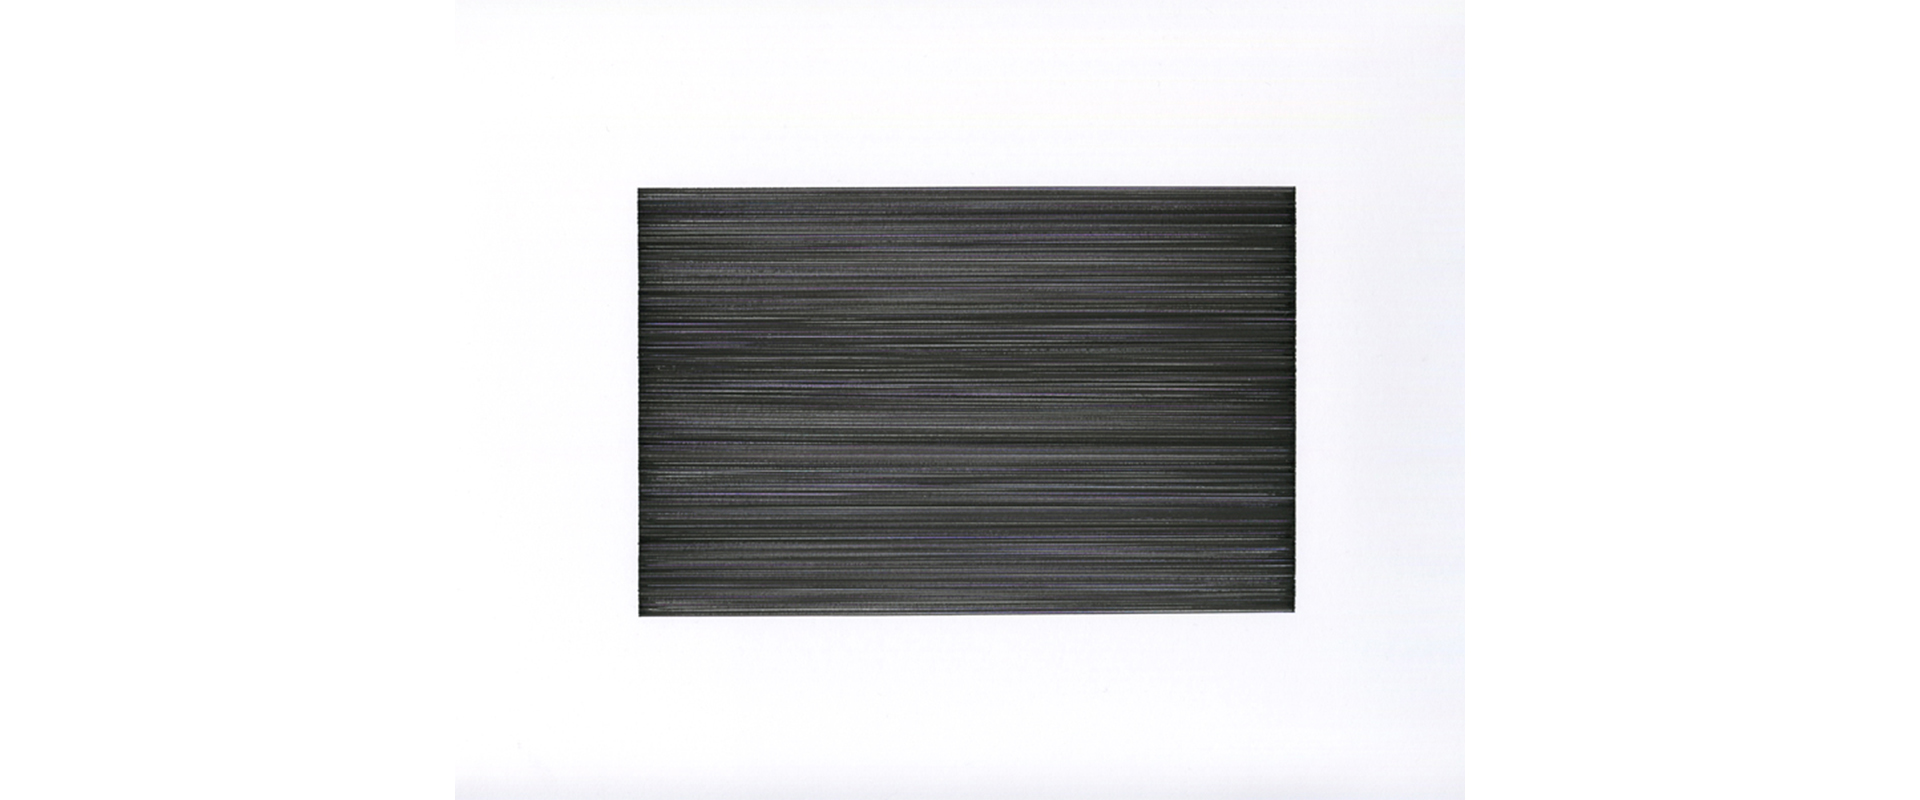 Lars Strandh, Ohne Titel (T-2021) – 2020, Farbige Tinte auf Papier, 11,5 x 17,5 cm (Blattgröße 42 x 29,7cm)